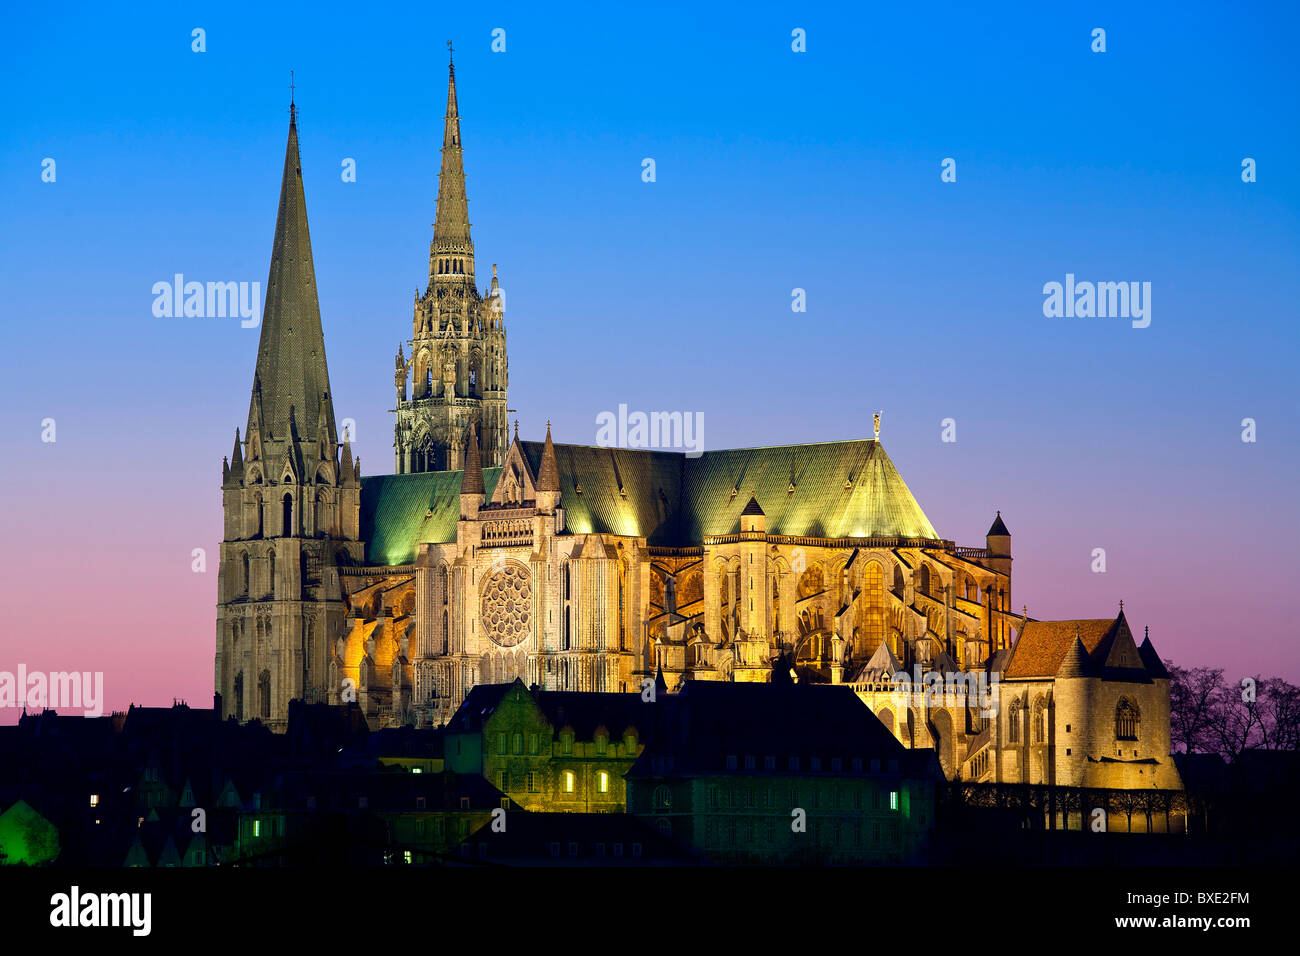 La cathédrale de Chartres est éclairée la nuit Banque D'Images